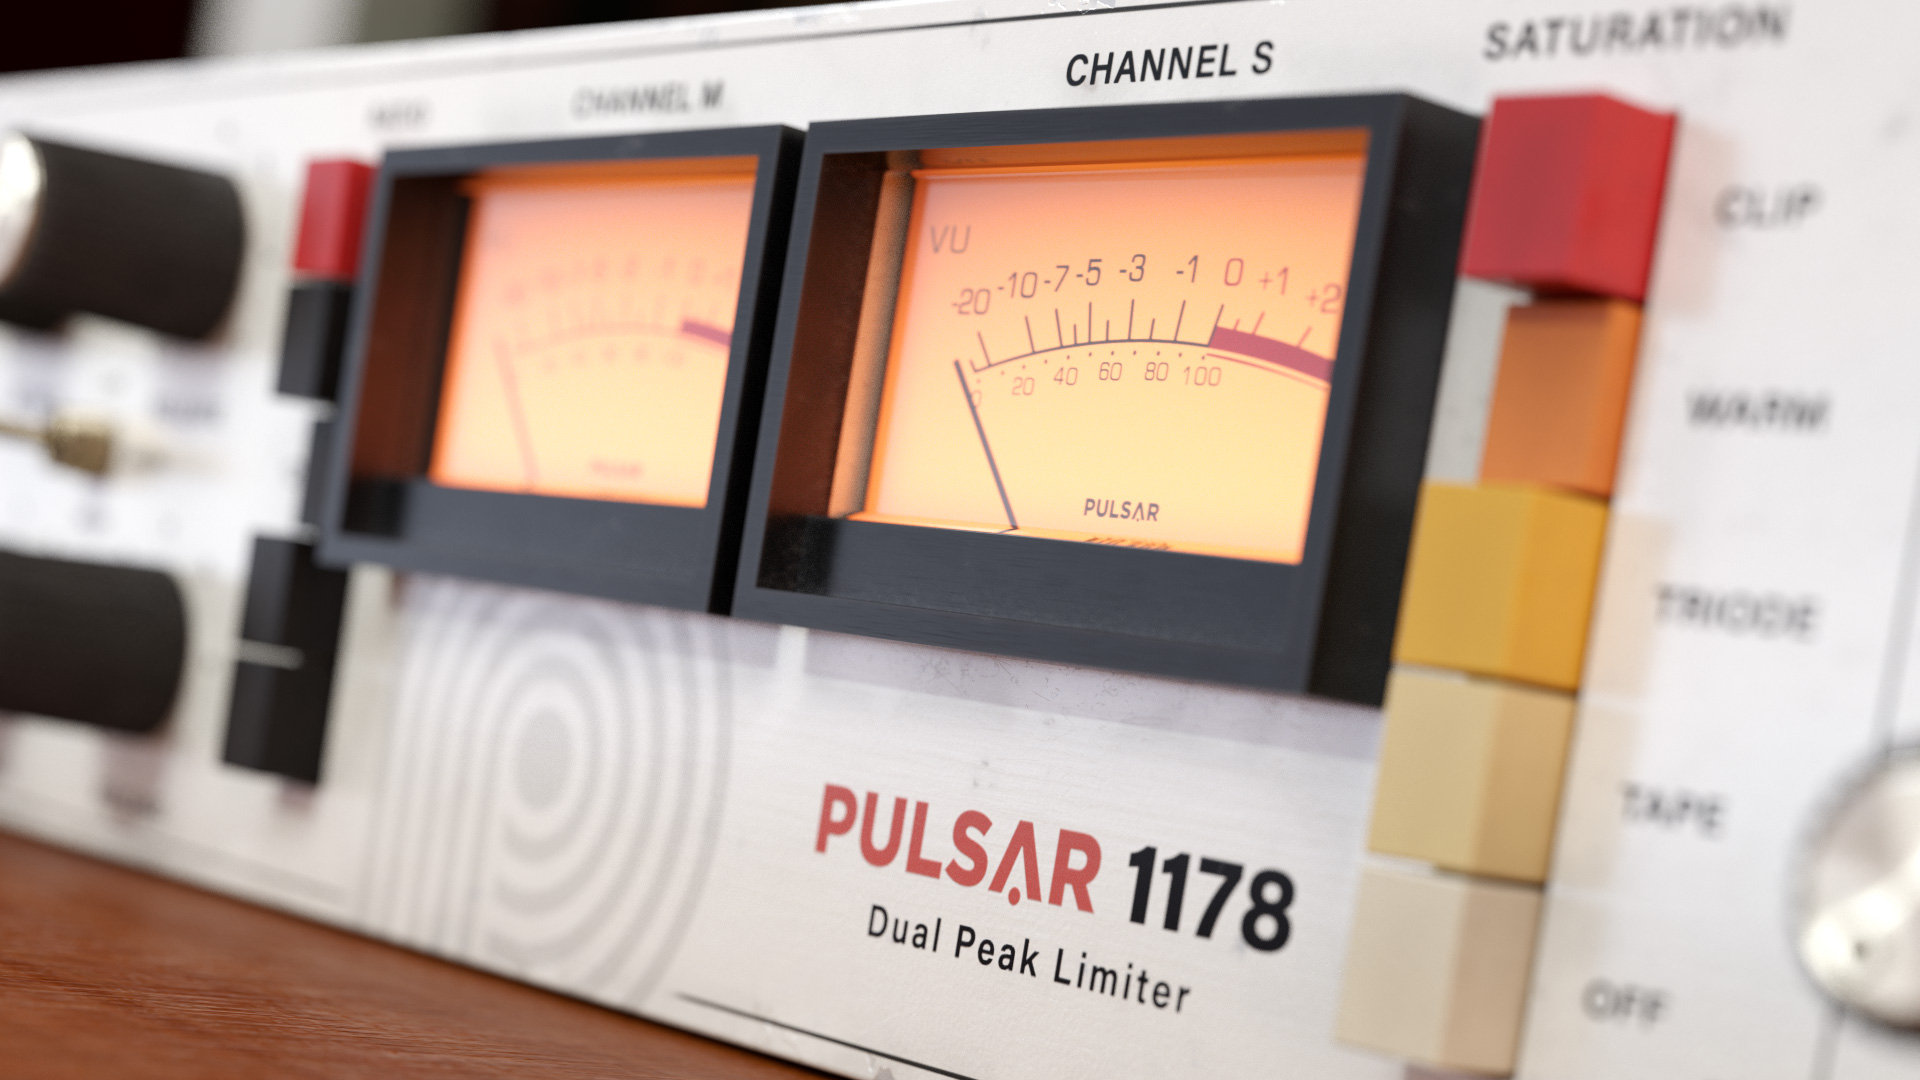 Pulsar 1178 3d close-up 4